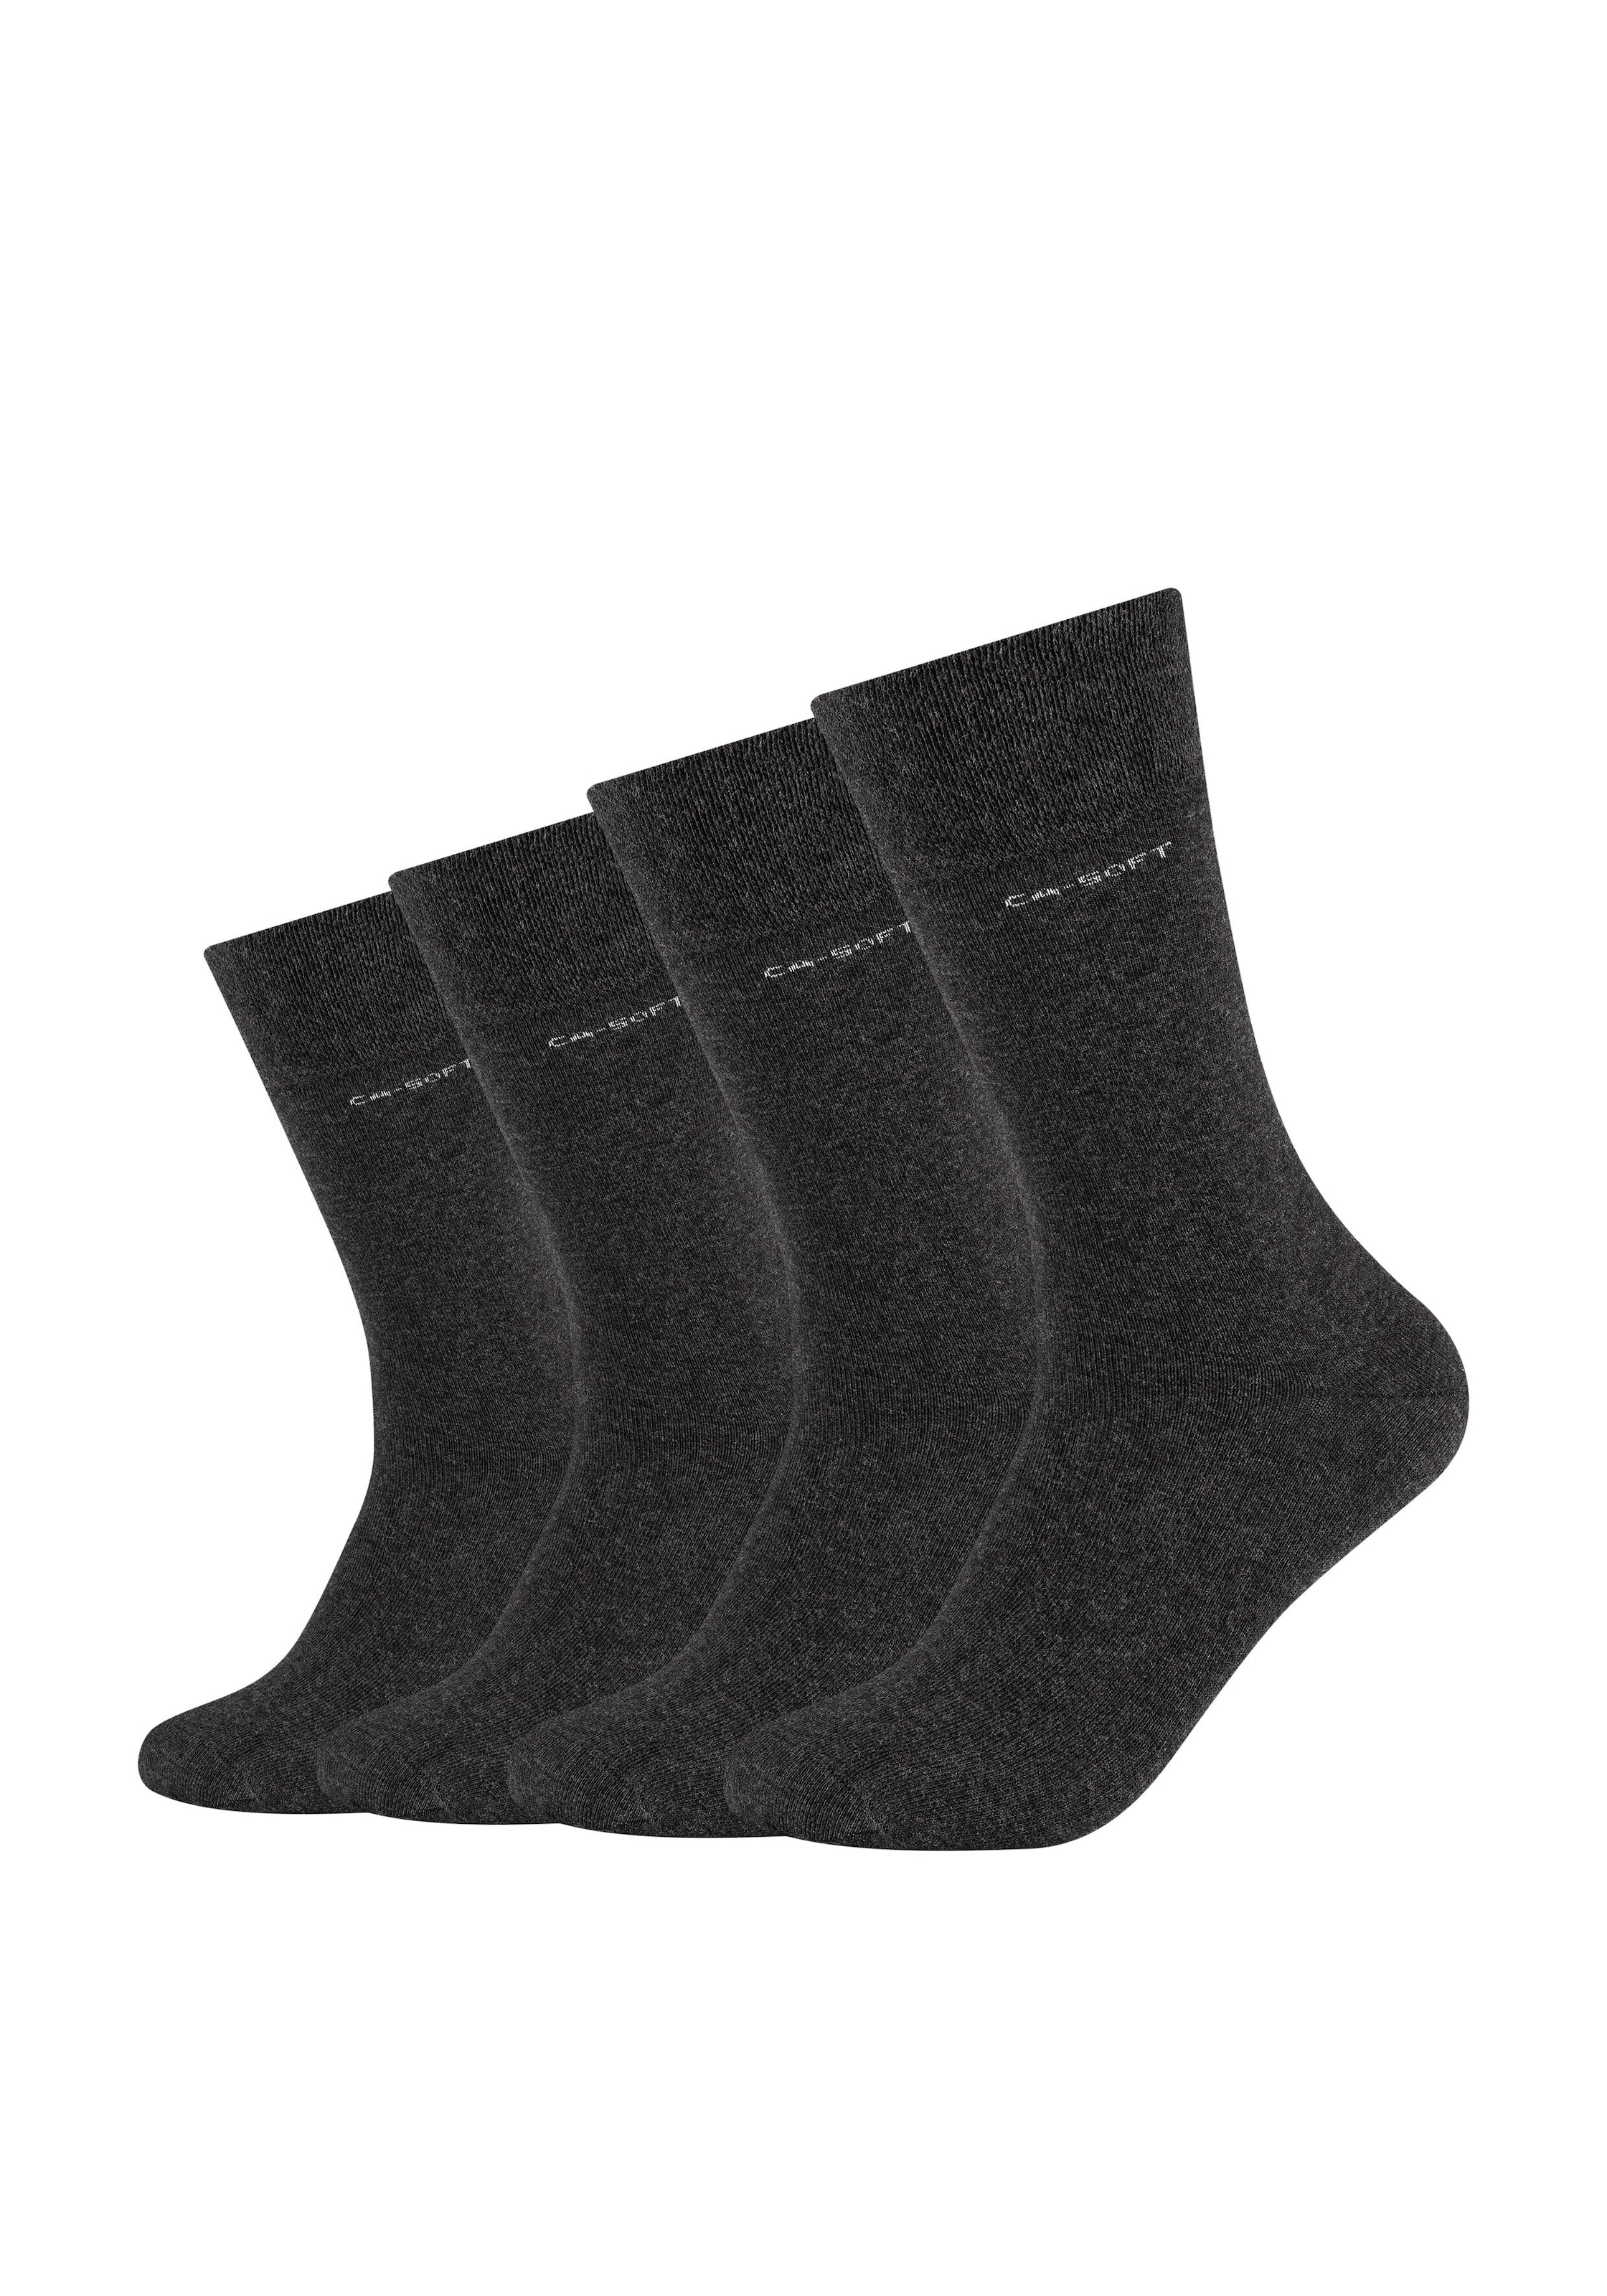 Socken, (Packung, 4 Paar), mit verstärktem Fersen- und Zehenbereich